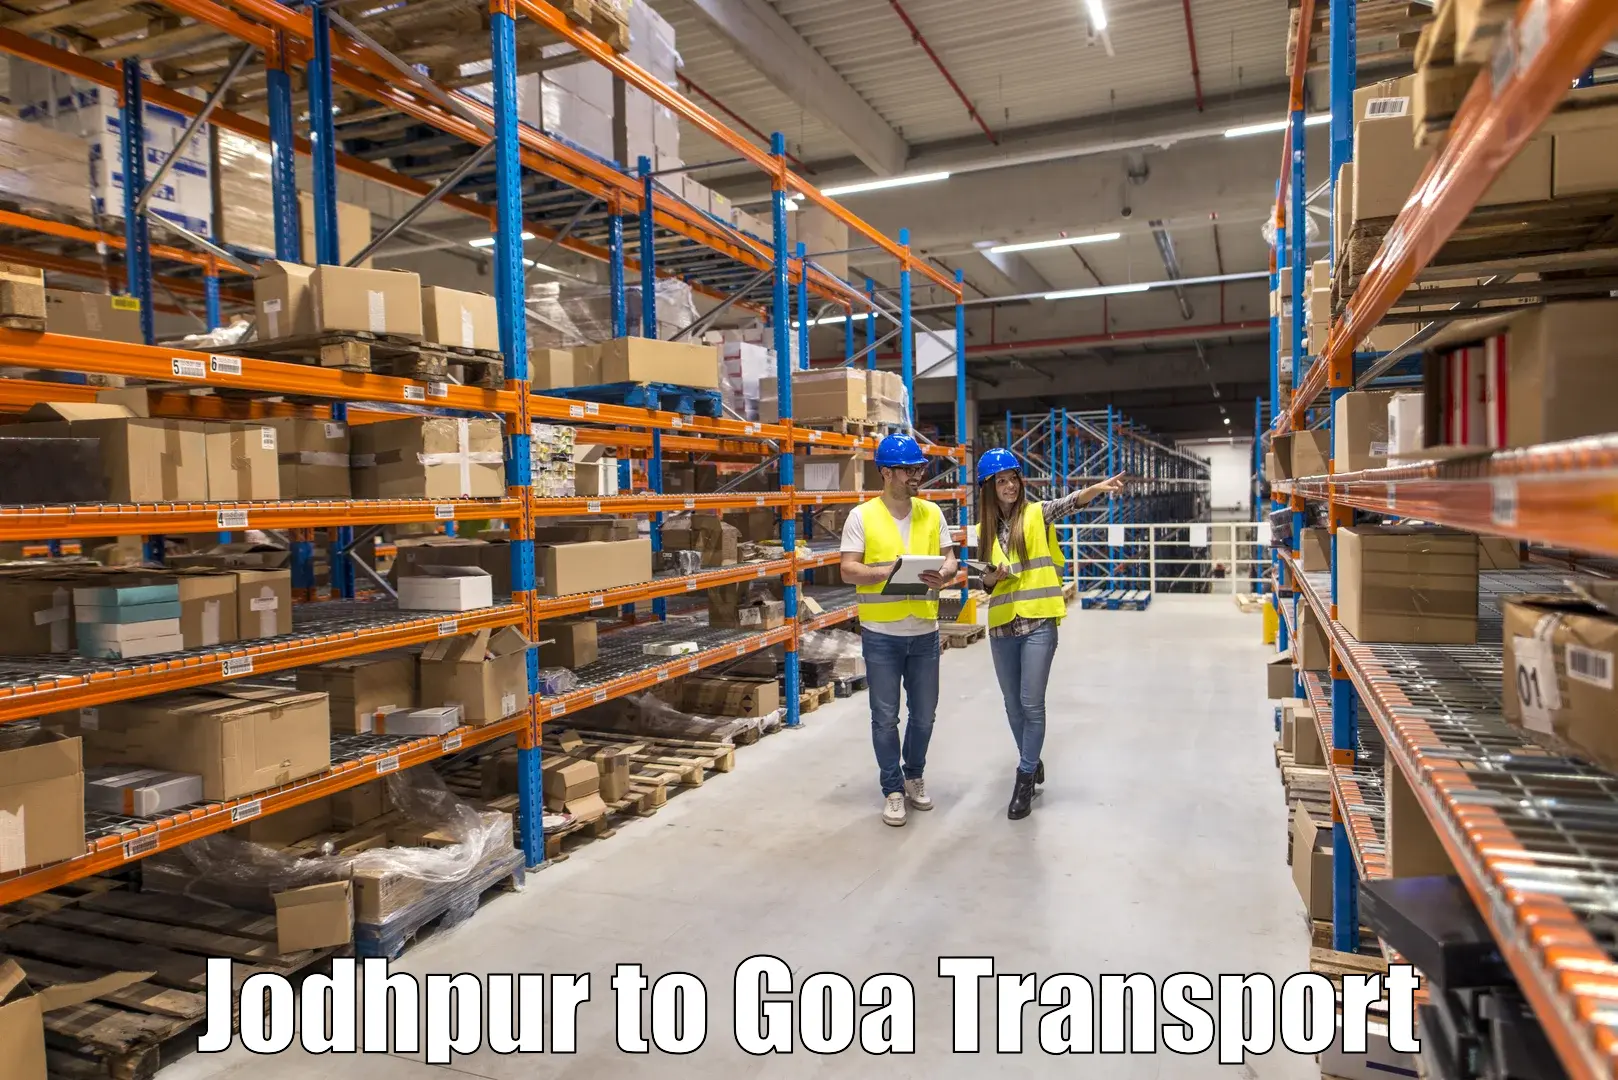 Two wheeler transport services Jodhpur to Goa